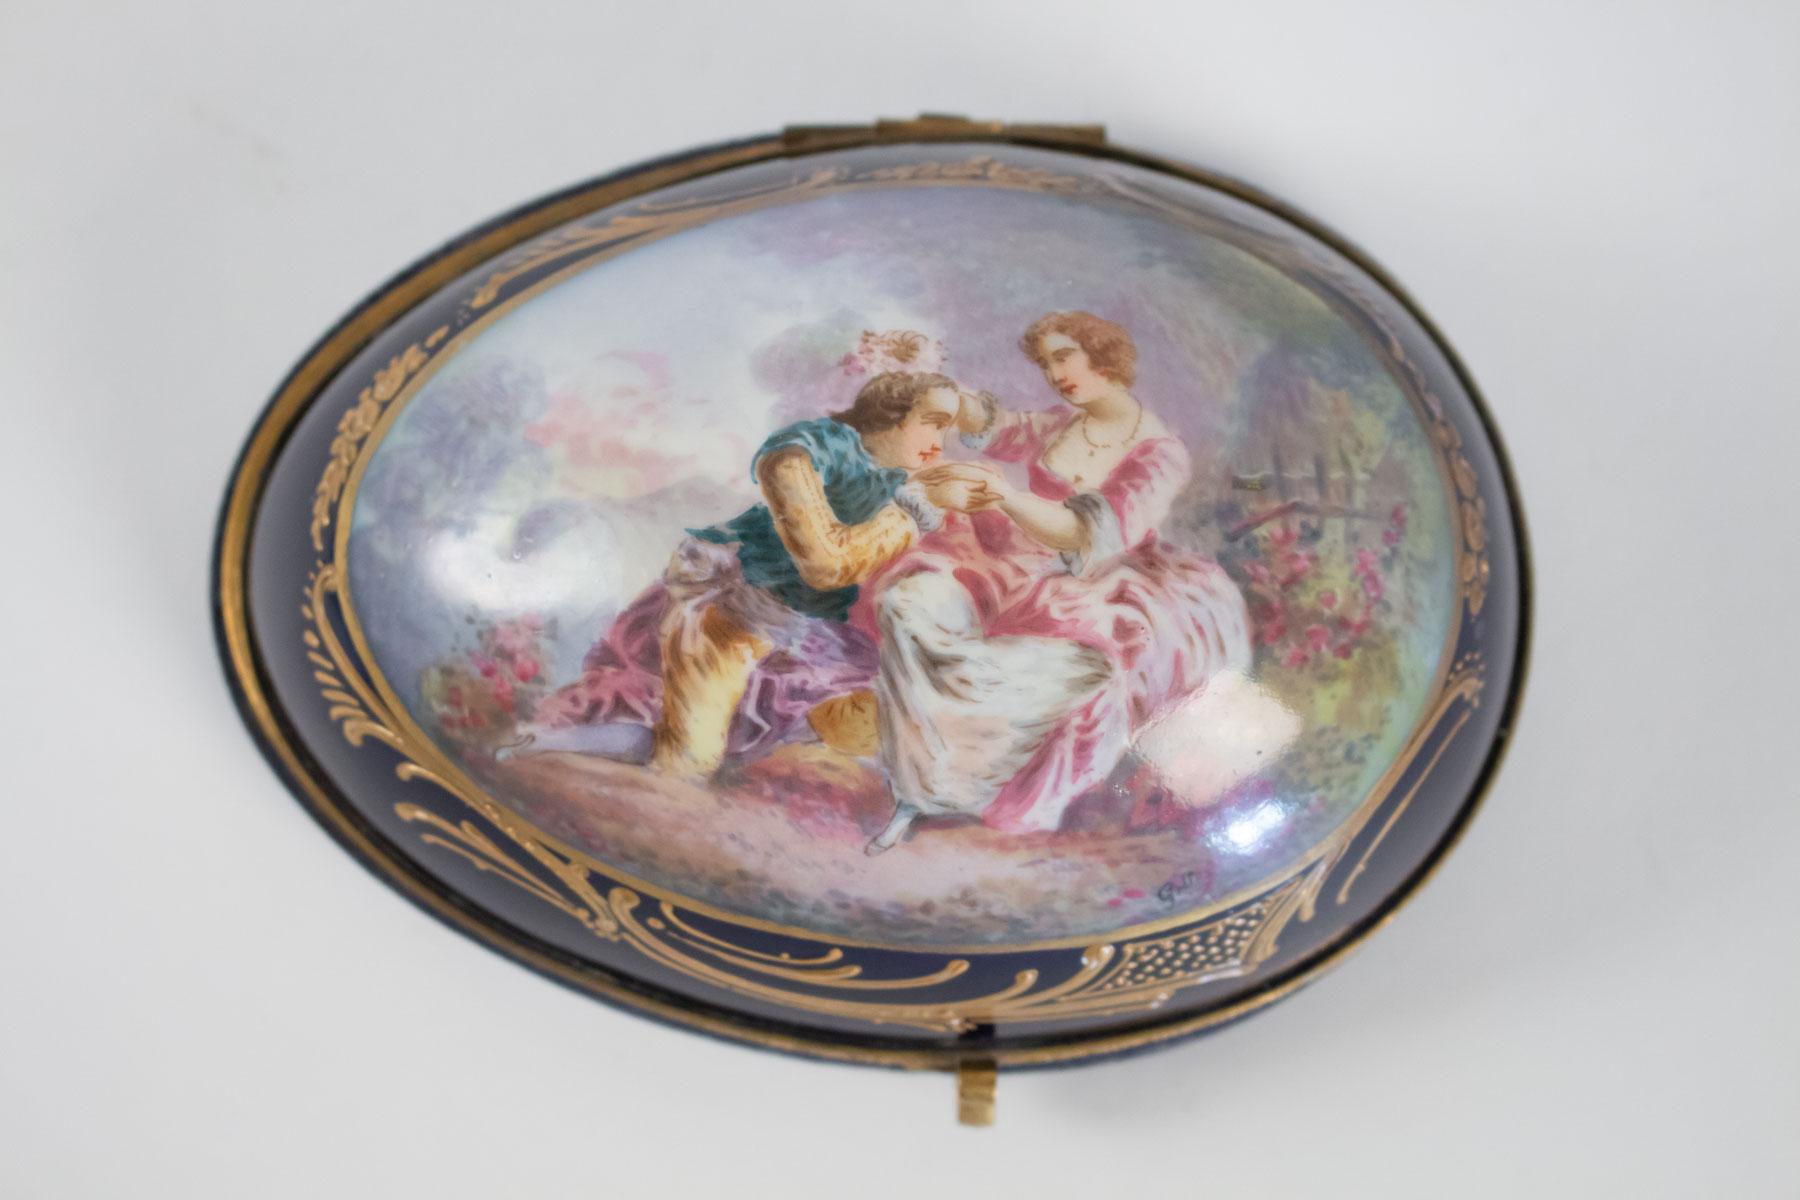 Half Sèvres porcelain egg forming box, 19th century, Napoleon III Period
Measures: H 8cm, W 16cm, D 12cm.